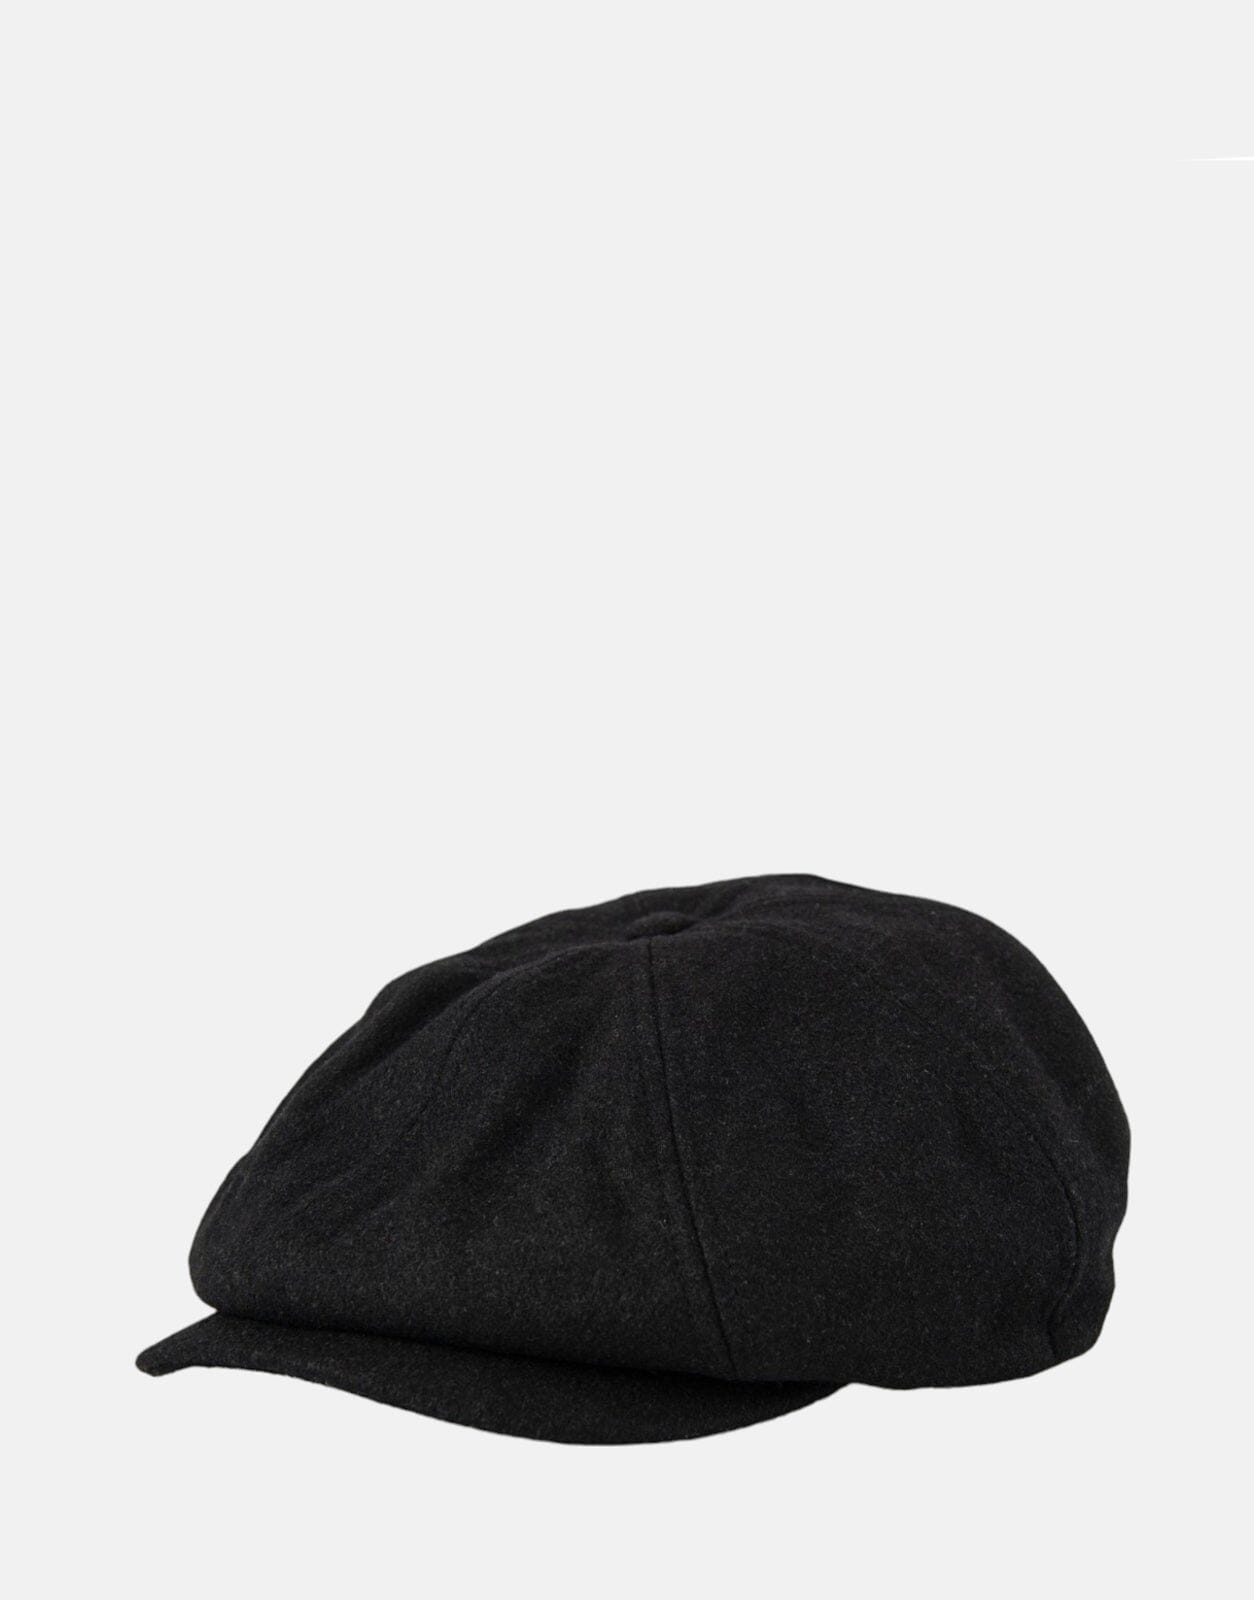 Ben Sherman Ivy Hat Black - Subwear